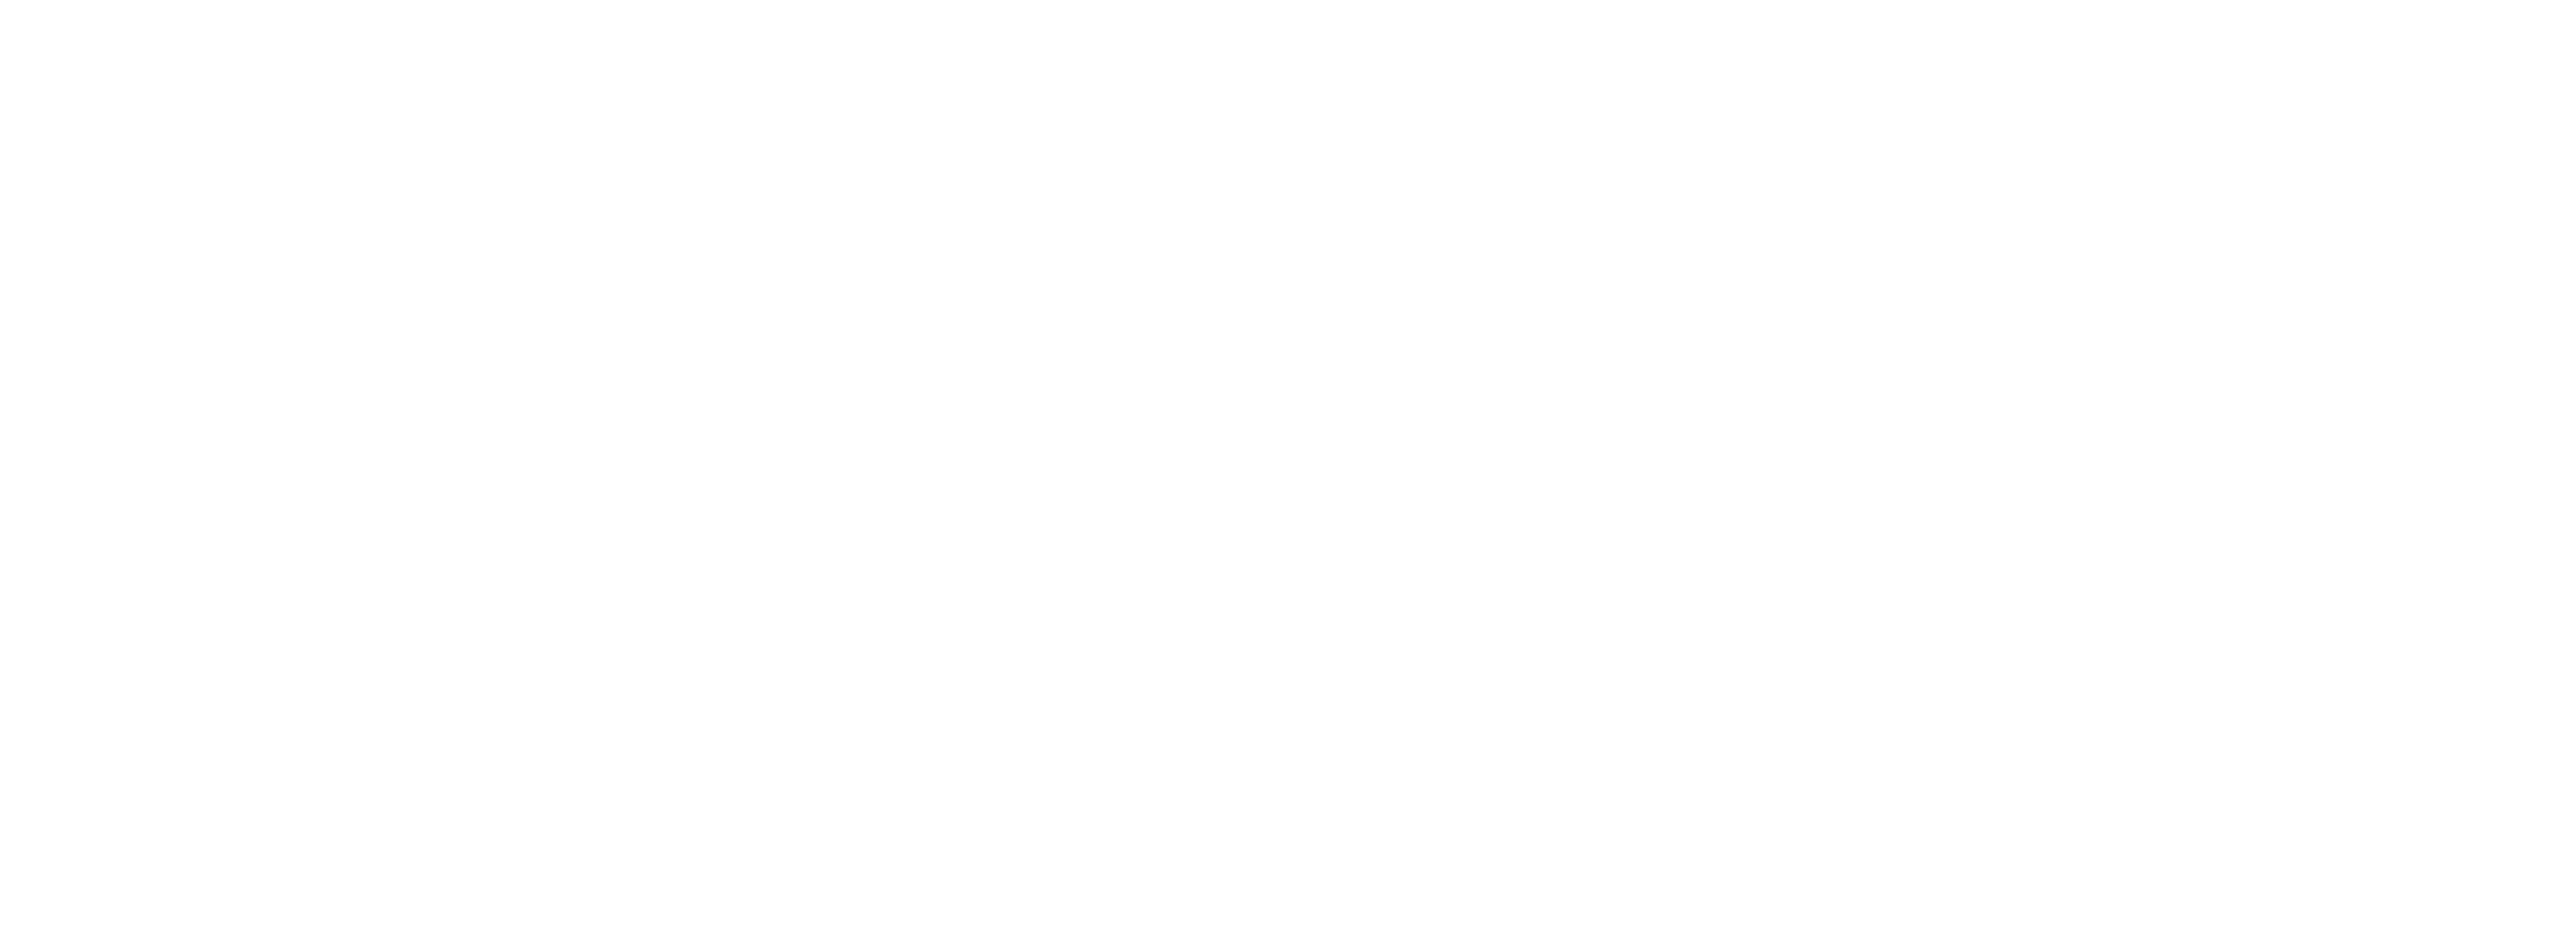 Reclaim Your Future - White Logo - Free Arizona marijauna expungement